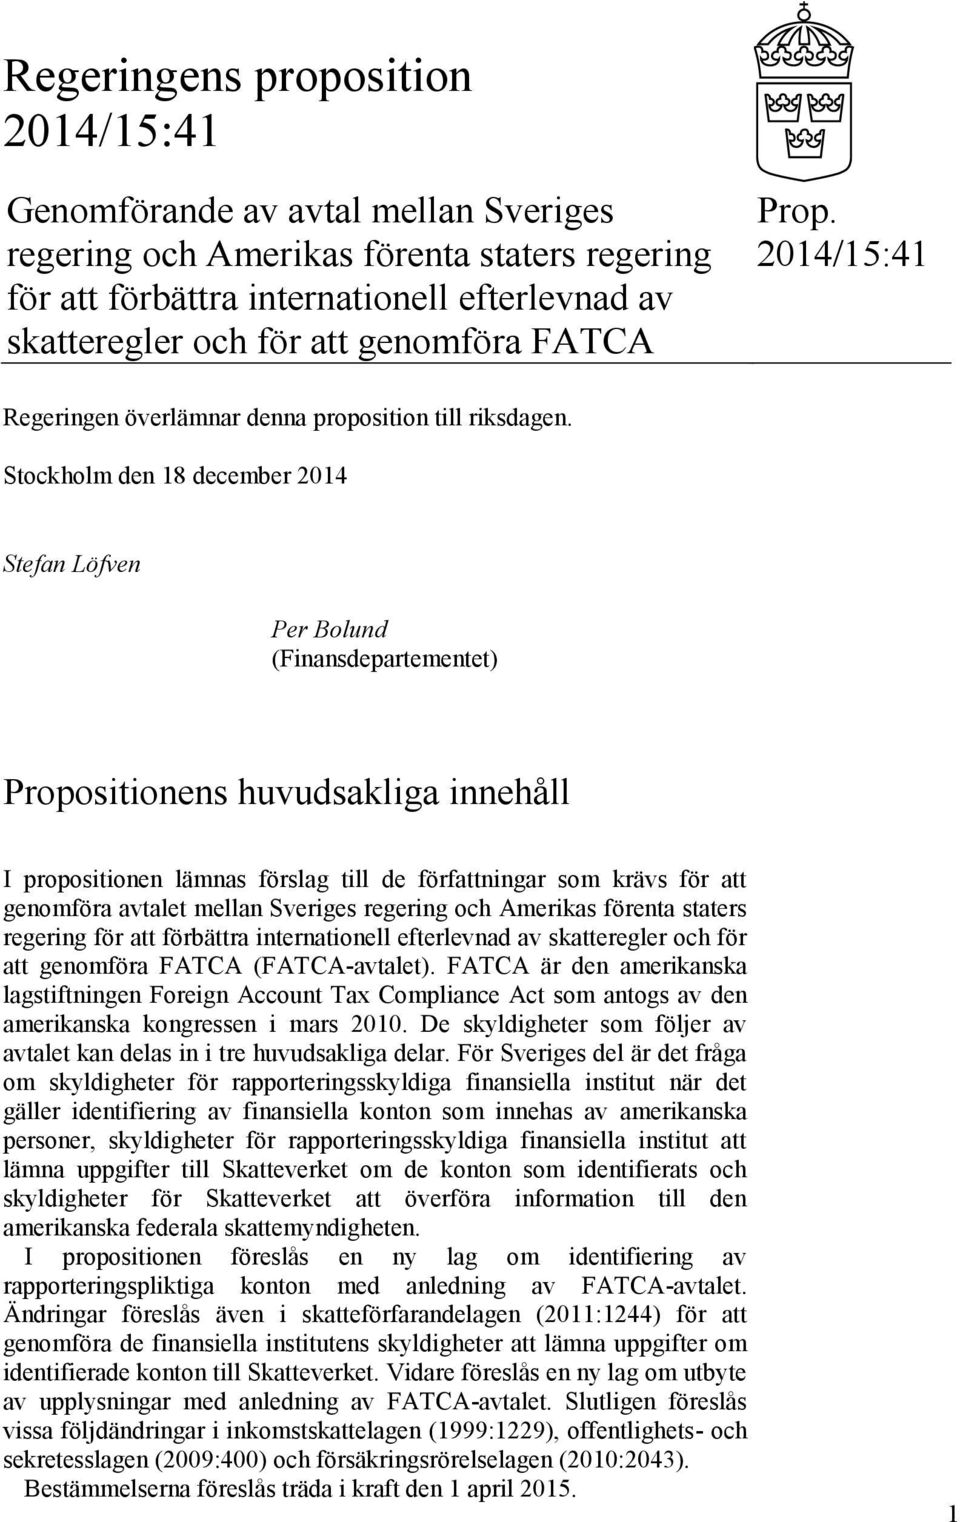 Stockholm den 18 december 2014 Stefan Löfven Per Bolund (Finansdepartementet) Propositionens huvudsakliga innehåll I propositionen lämnas förslag till de författningar som krävs för att genomföra